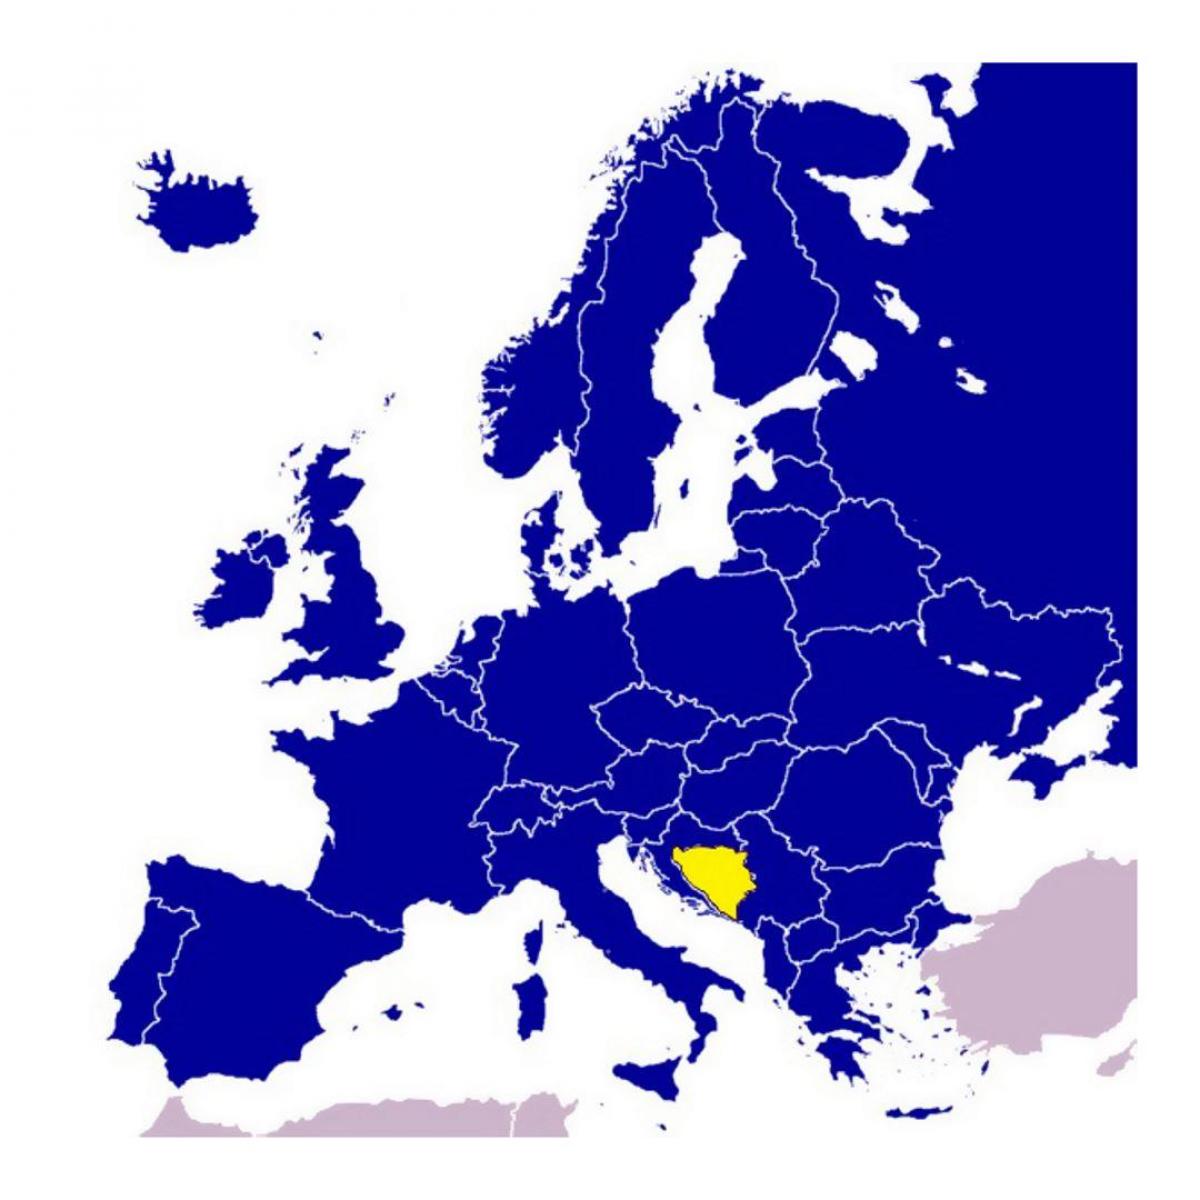 Kort over Bosnien-Hercegovina i europa